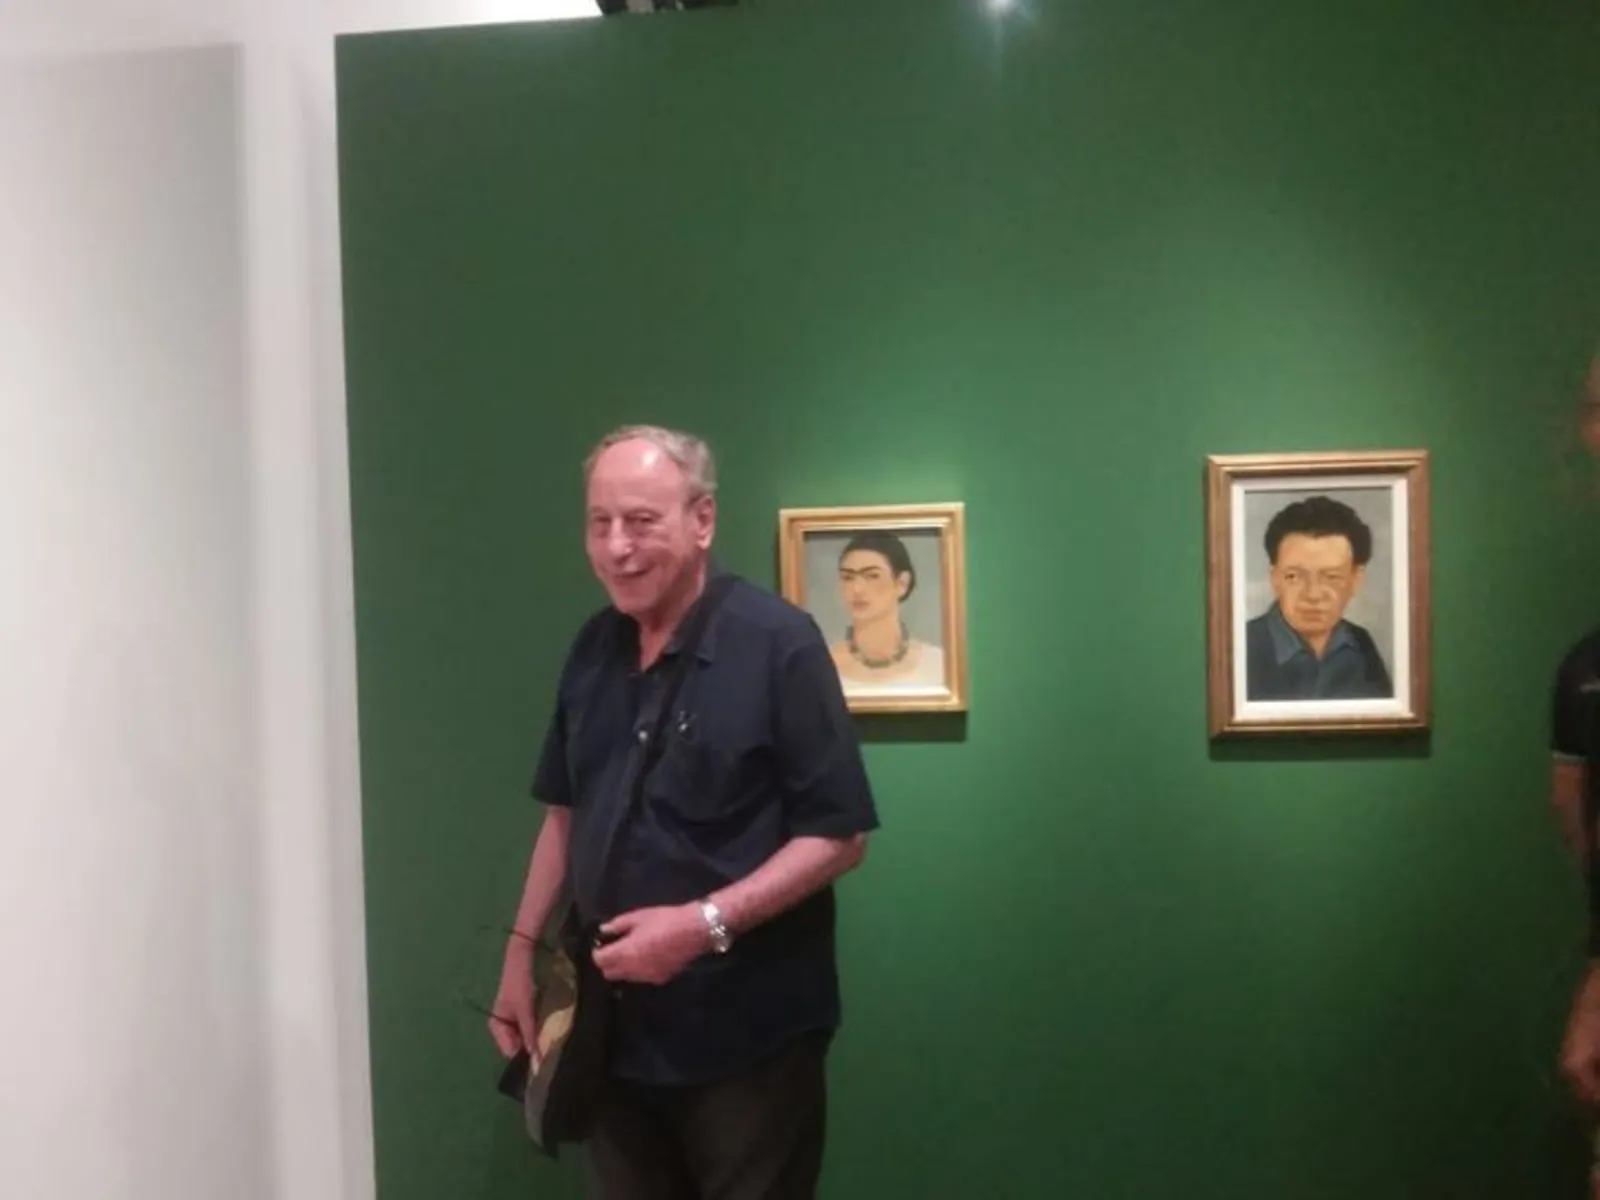 Claudio Willer na exposição "Frida Khalo - Conexões entre Mulheres Surrealistas", no Instituto Tomie Ohtake, em São Paulo, em 2015